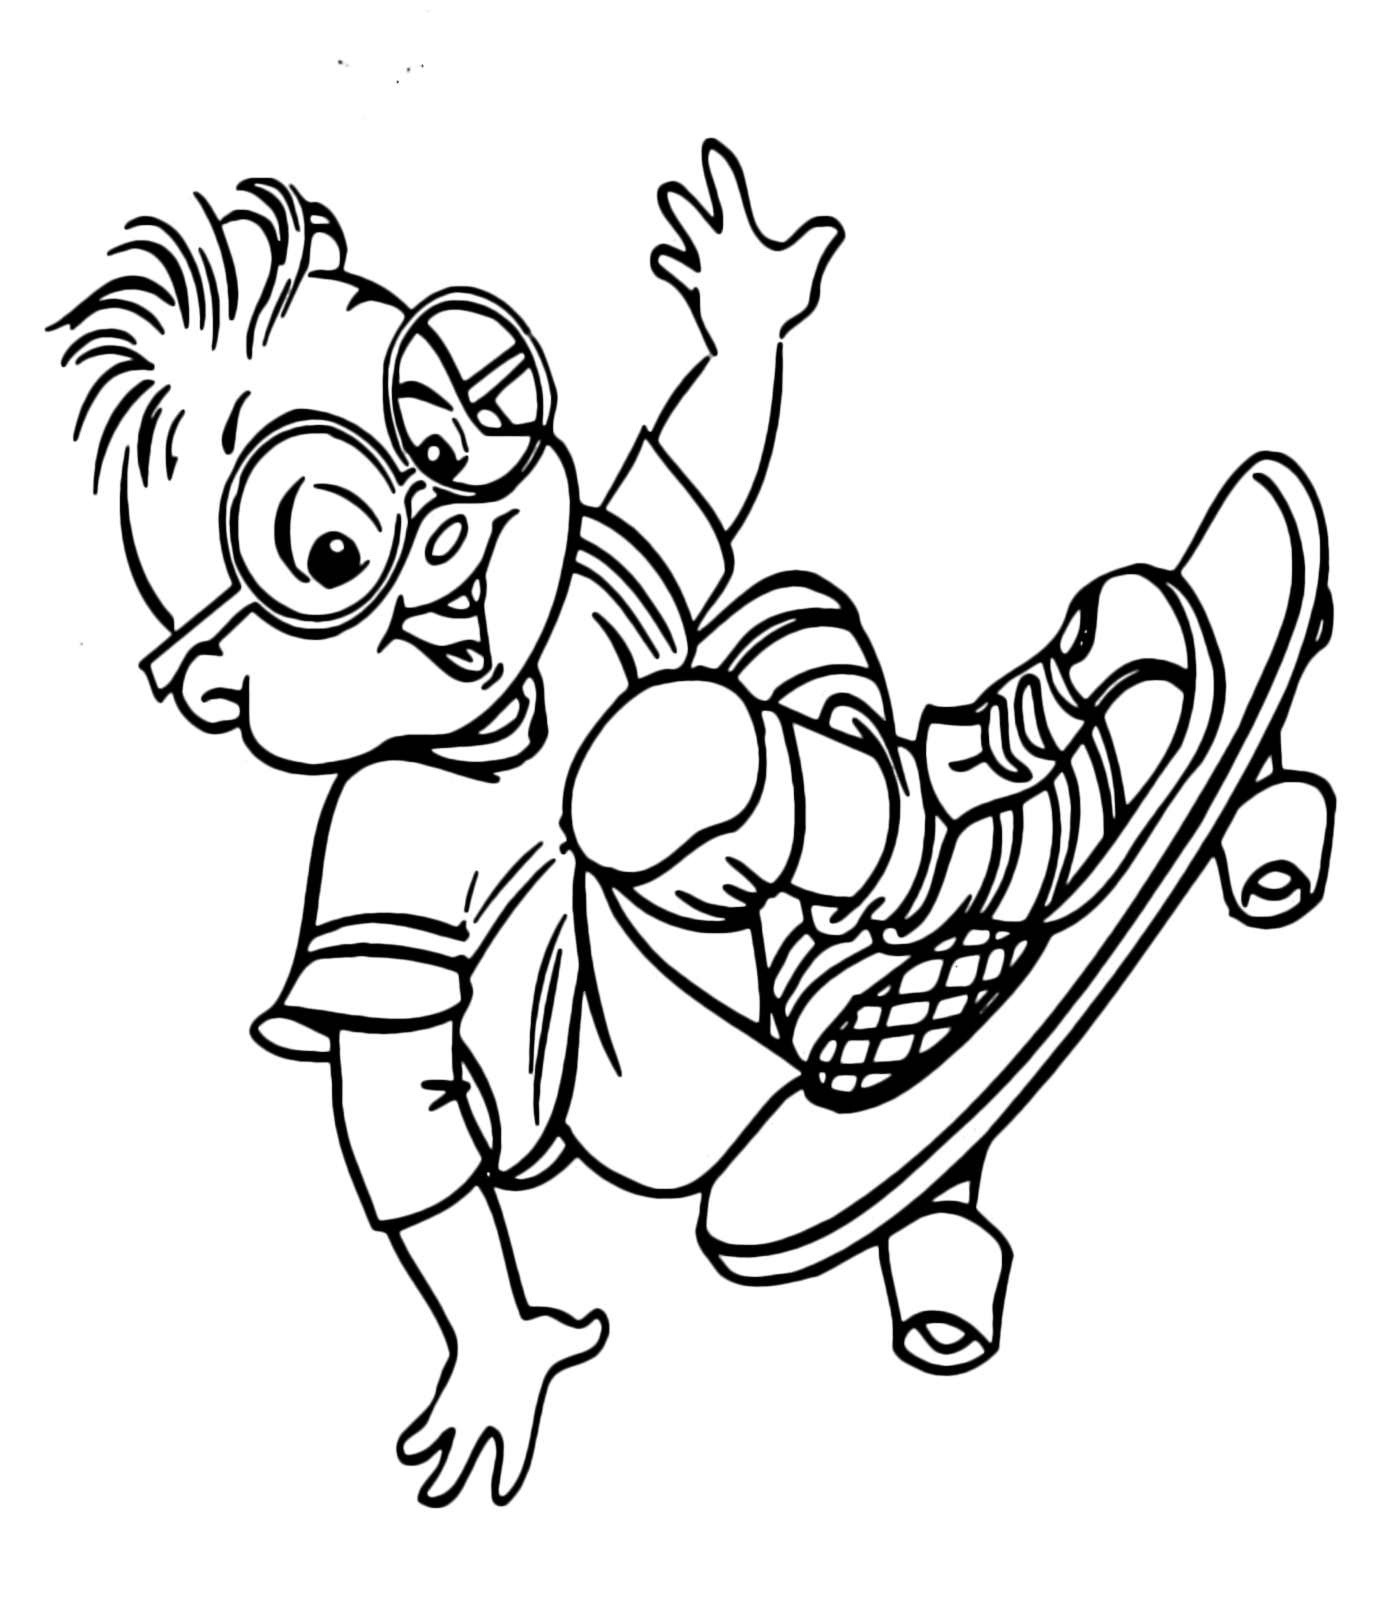 Alvin and the Chipmunks - Simon sfreccia sullo skateboard